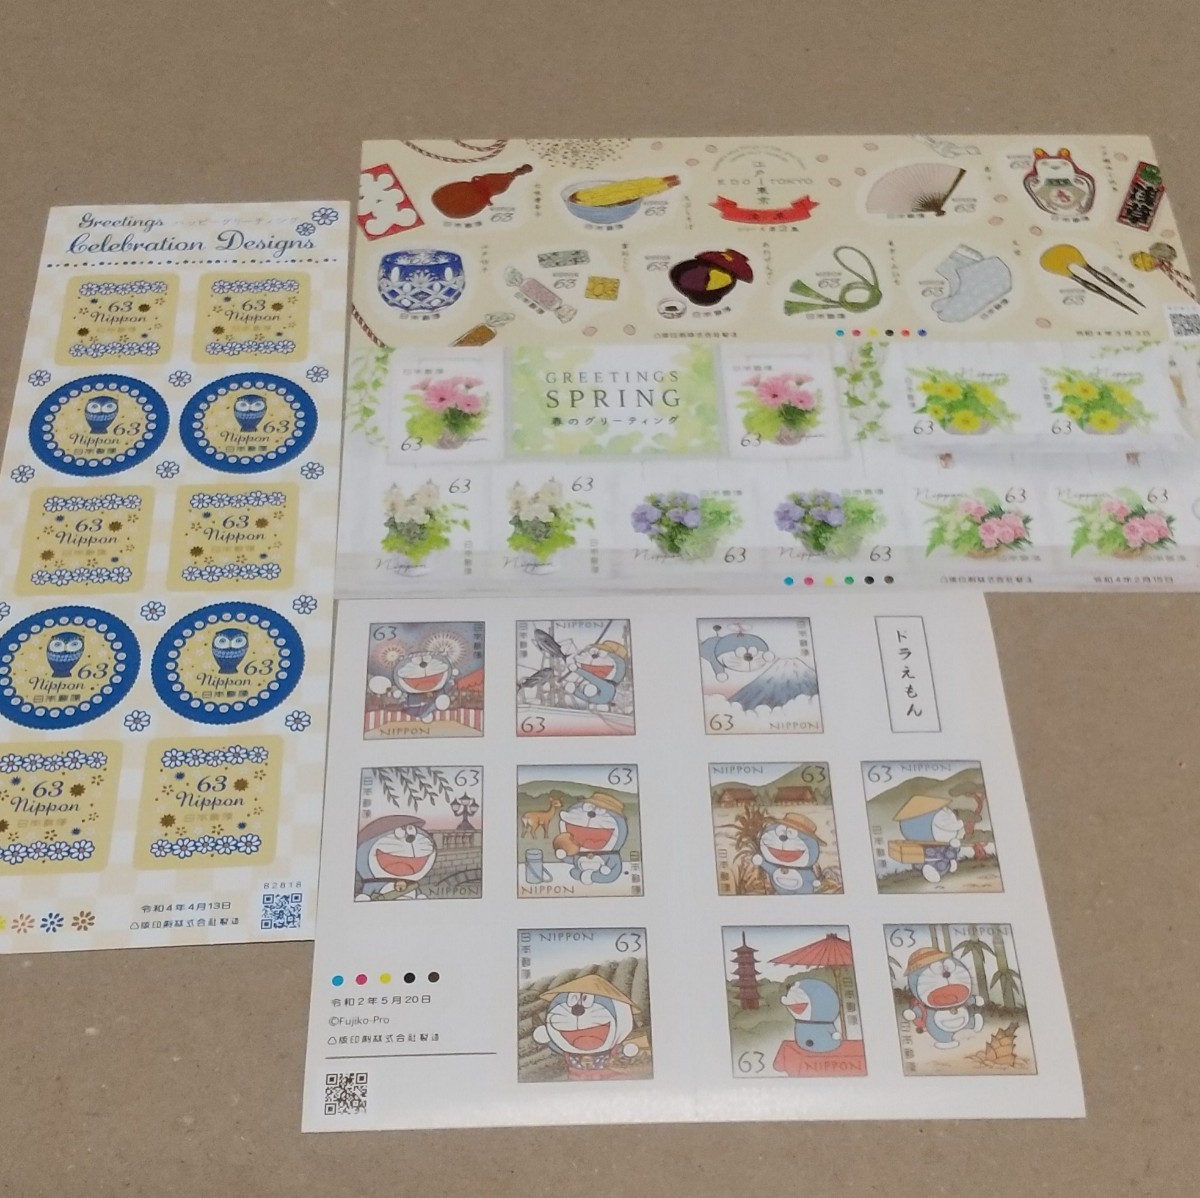 63円シール切手シート 4枚セットA 2520円分   記念切手